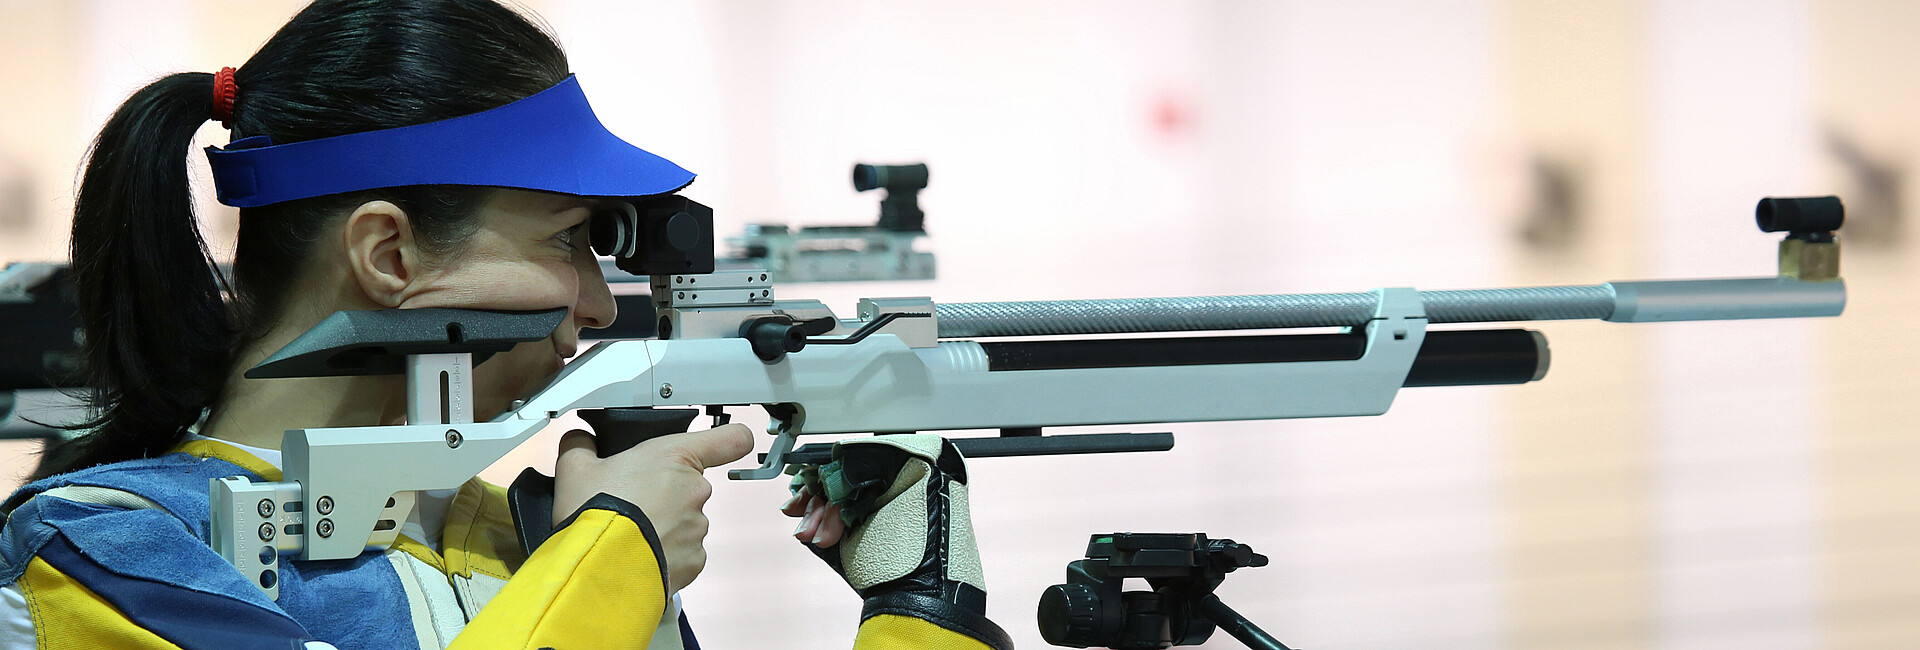 Eine Sportschützin zielt mit einem Luftgewehr auf eine Zielscheibe